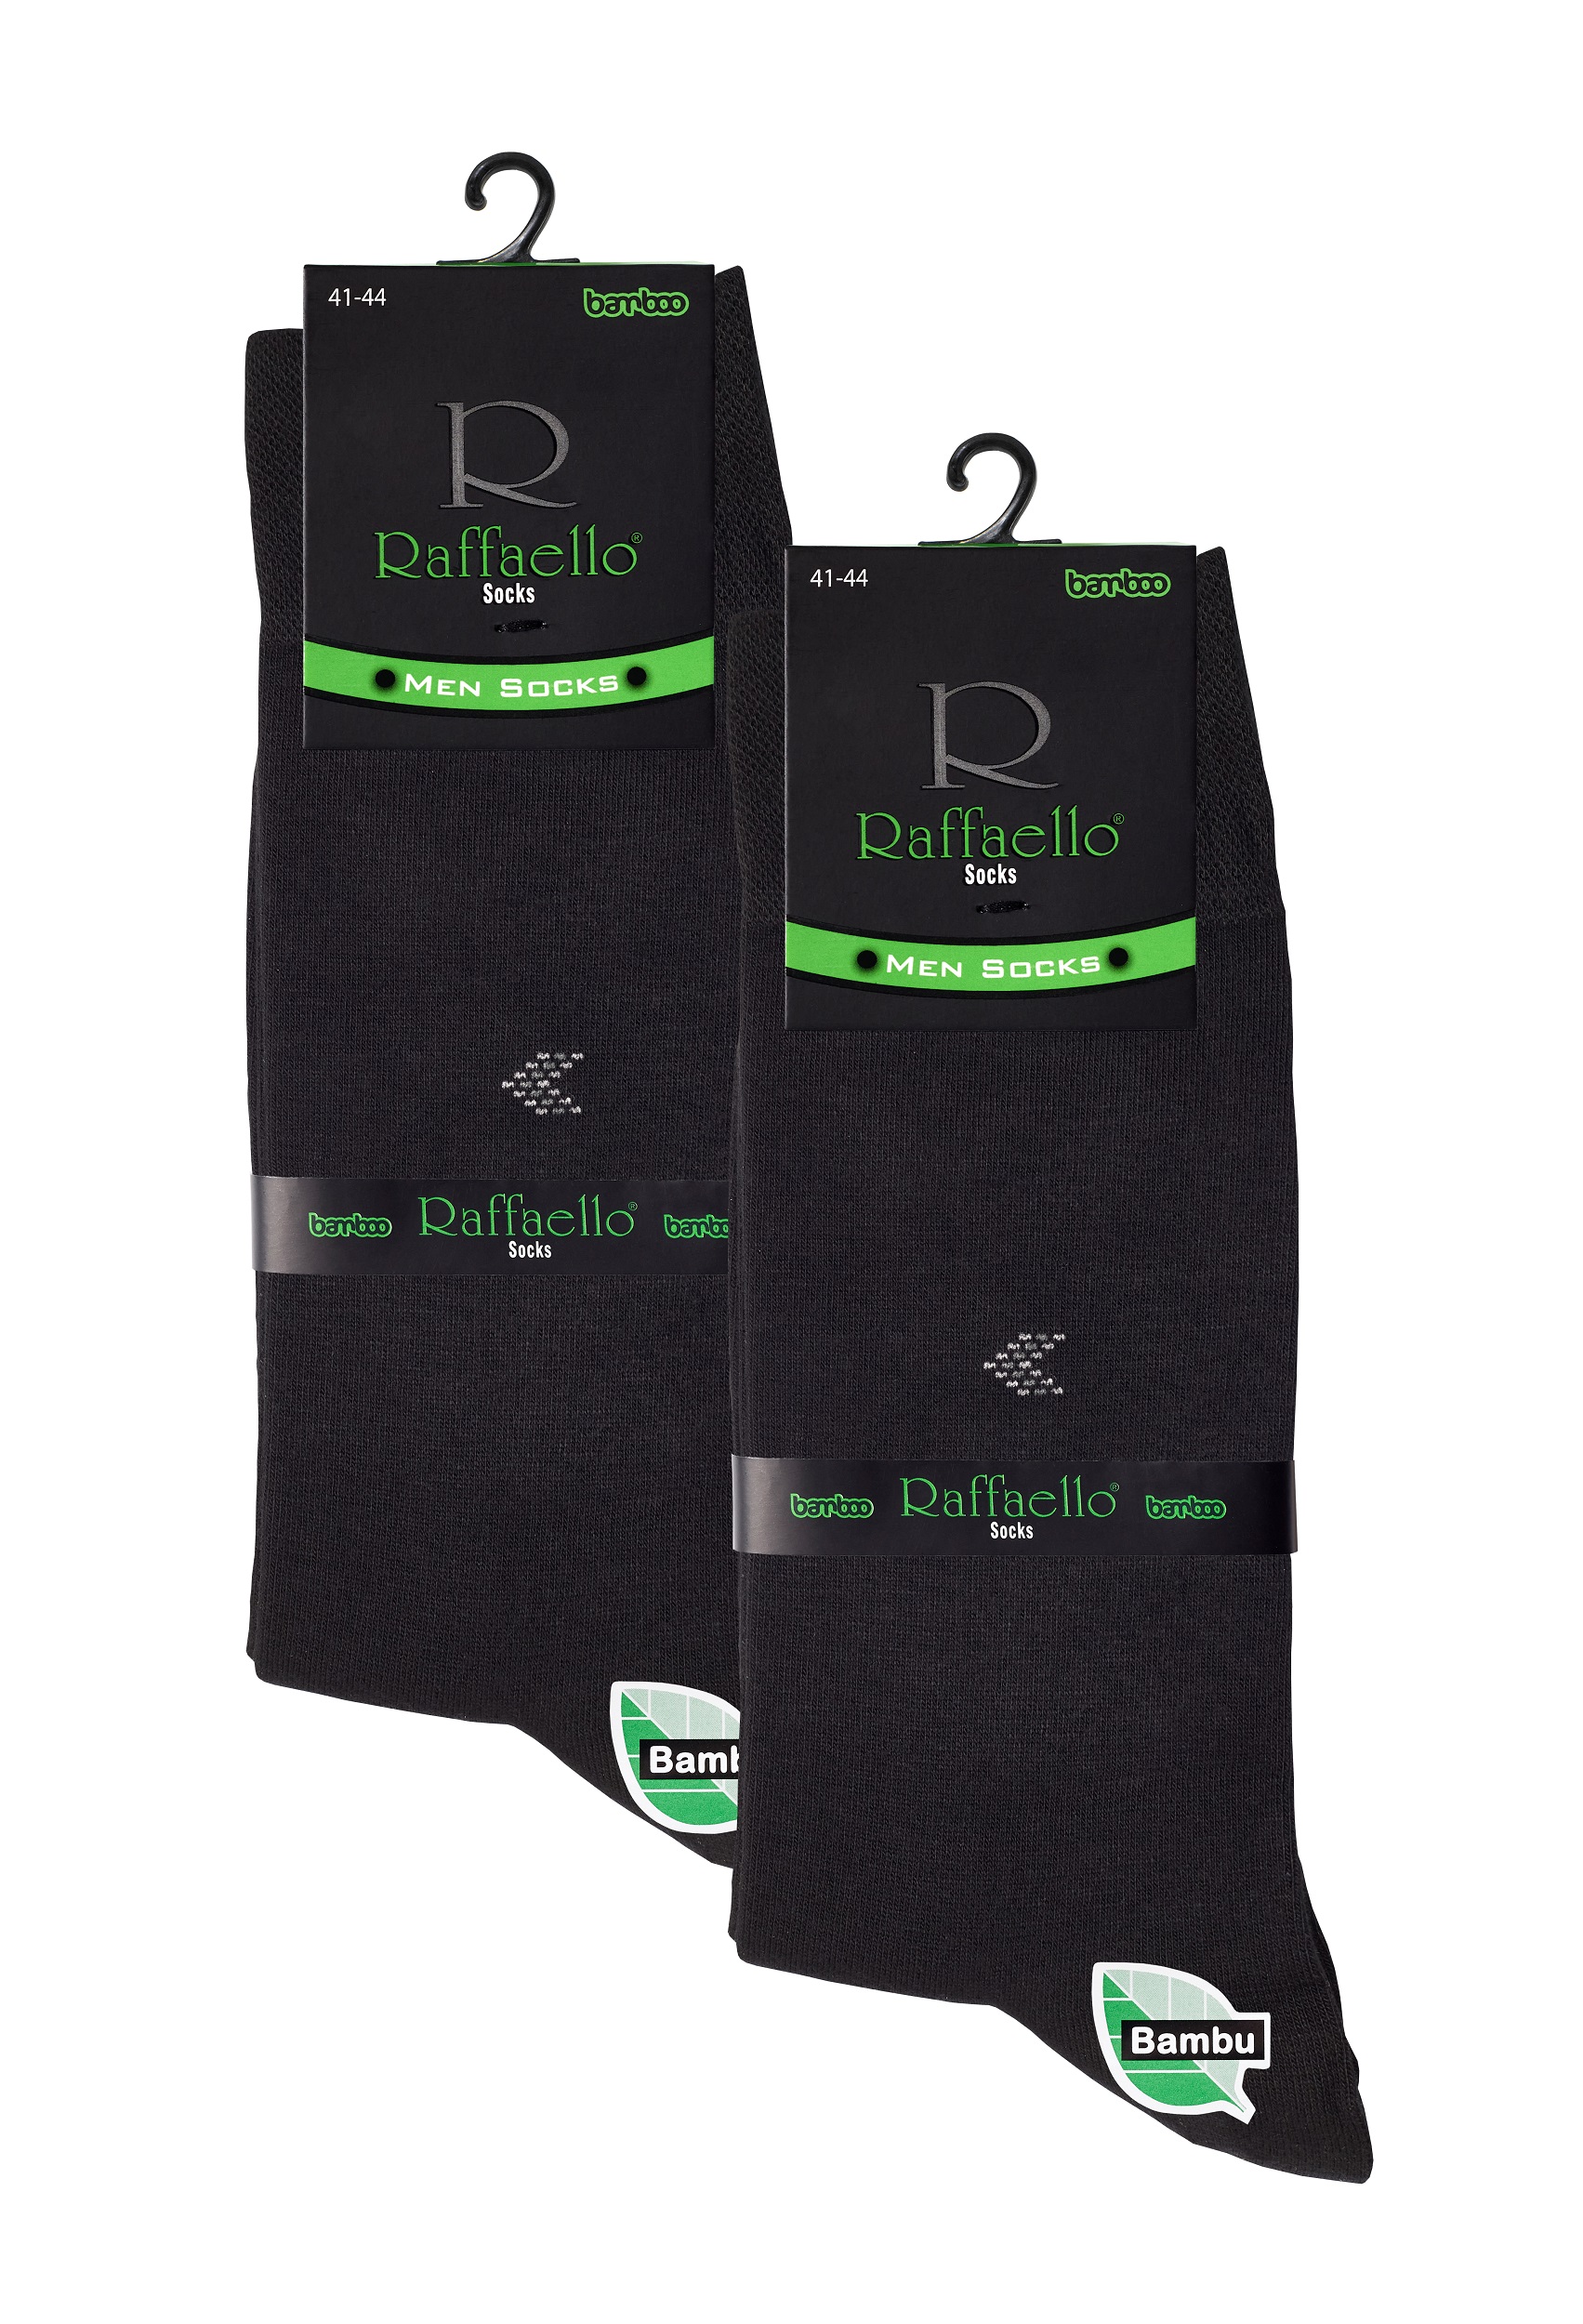 Комплект носков мужских Raffaello #007 из бамбука теплые набор 2 черных 41-44, 2 пары